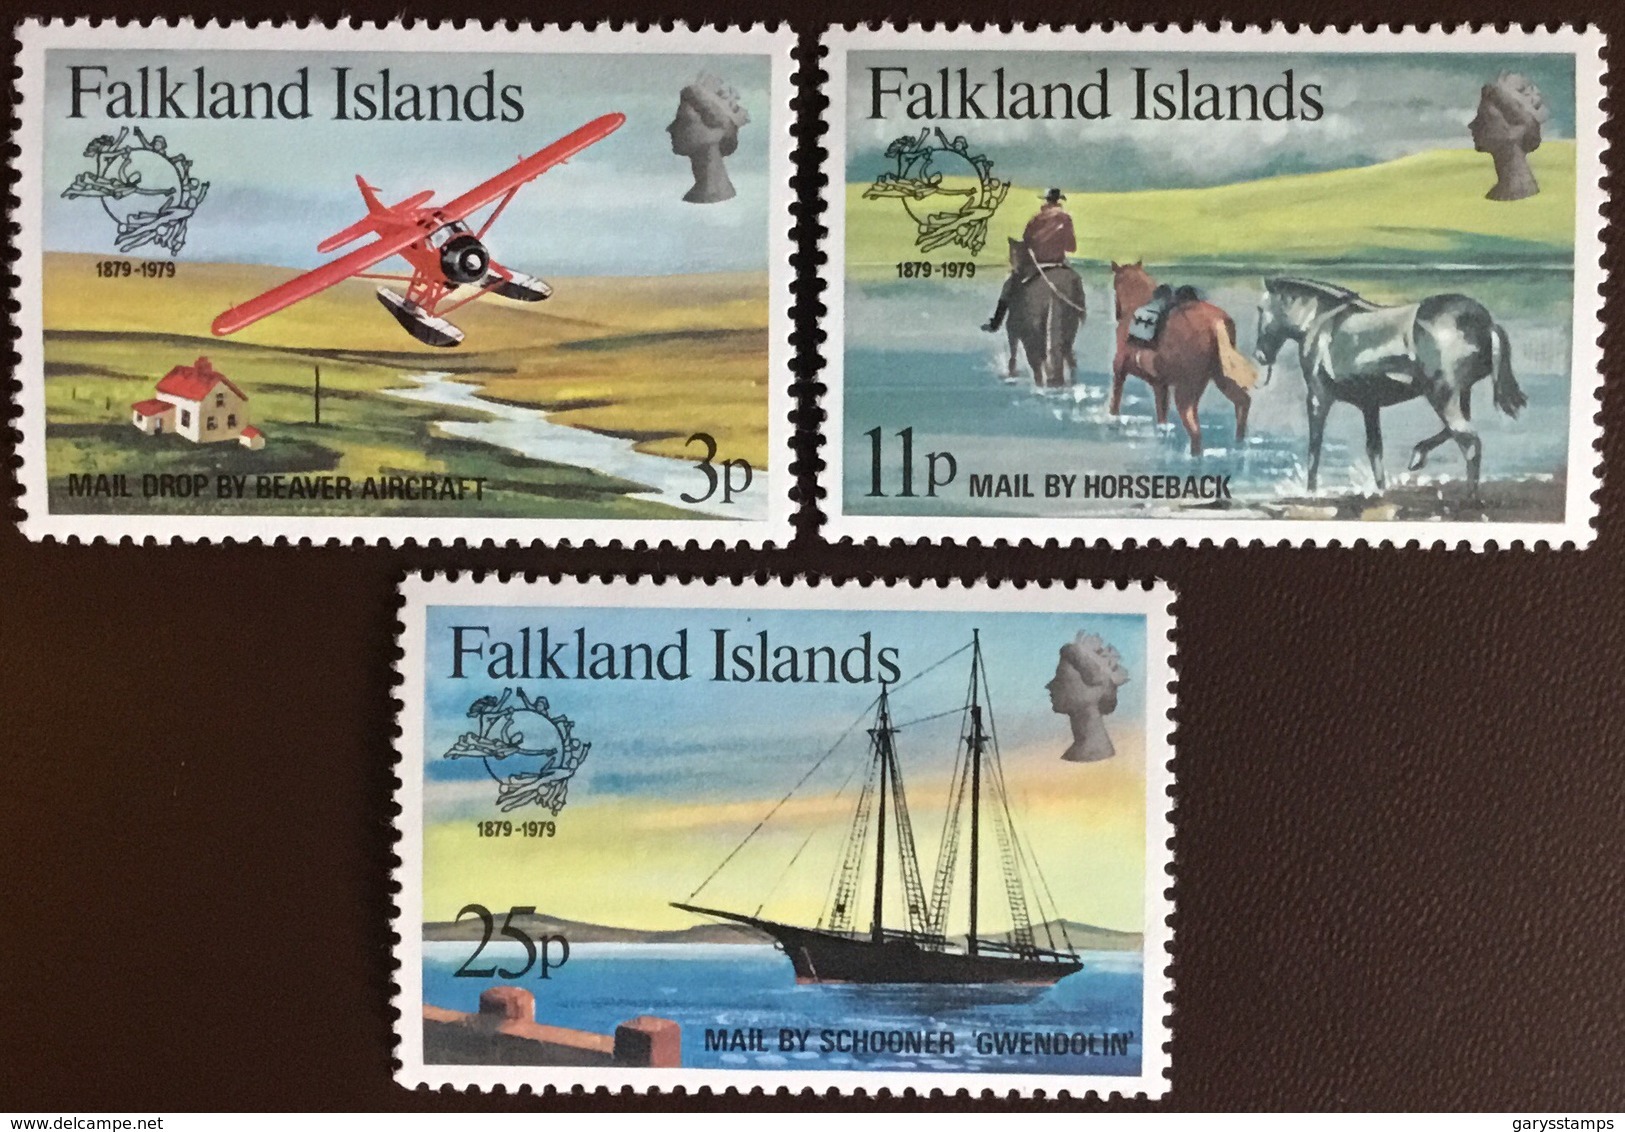 Falkland Islands 1979 UPU Aircraft MNH - Falkland Islands